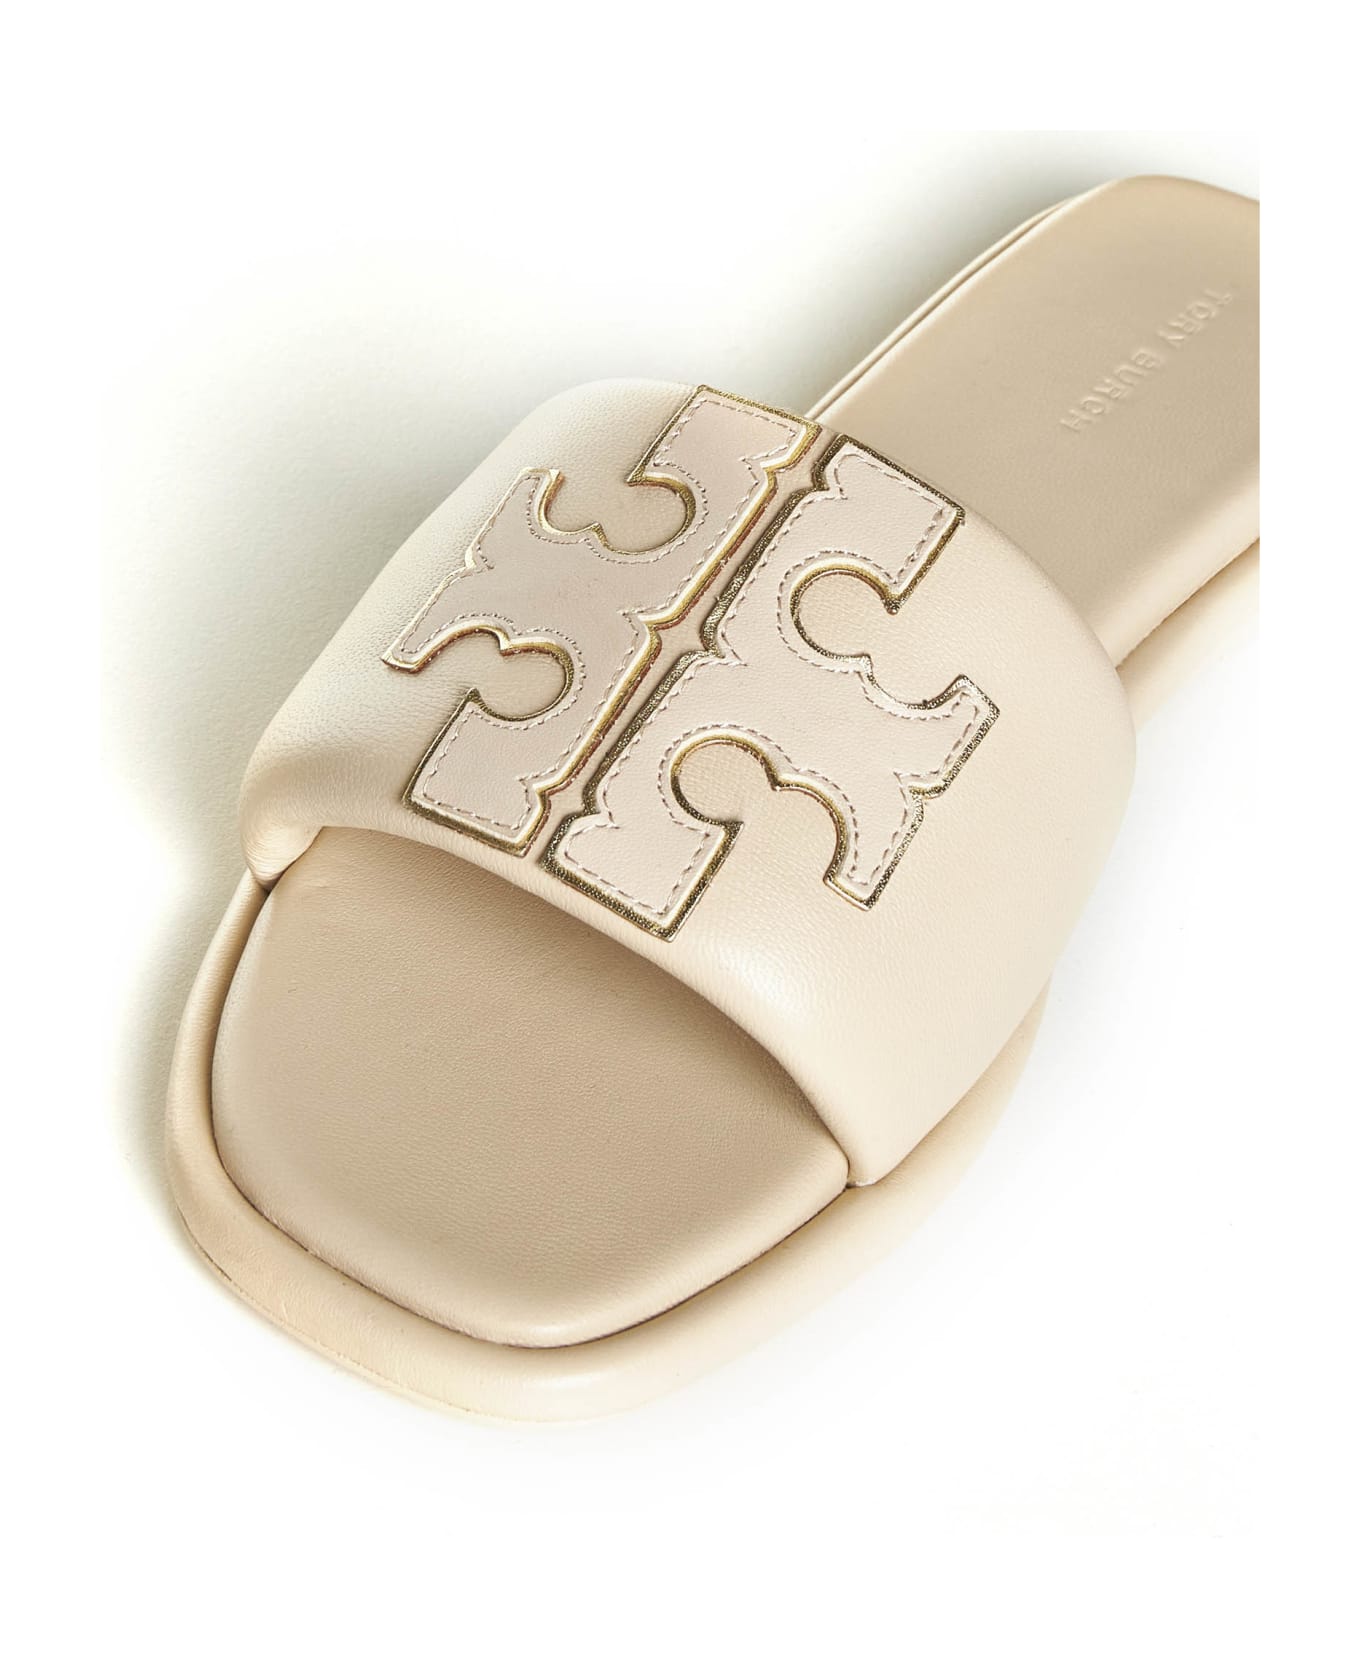 Tory Burch 'double T' Leather Sandals - Dulce De Leche/gold